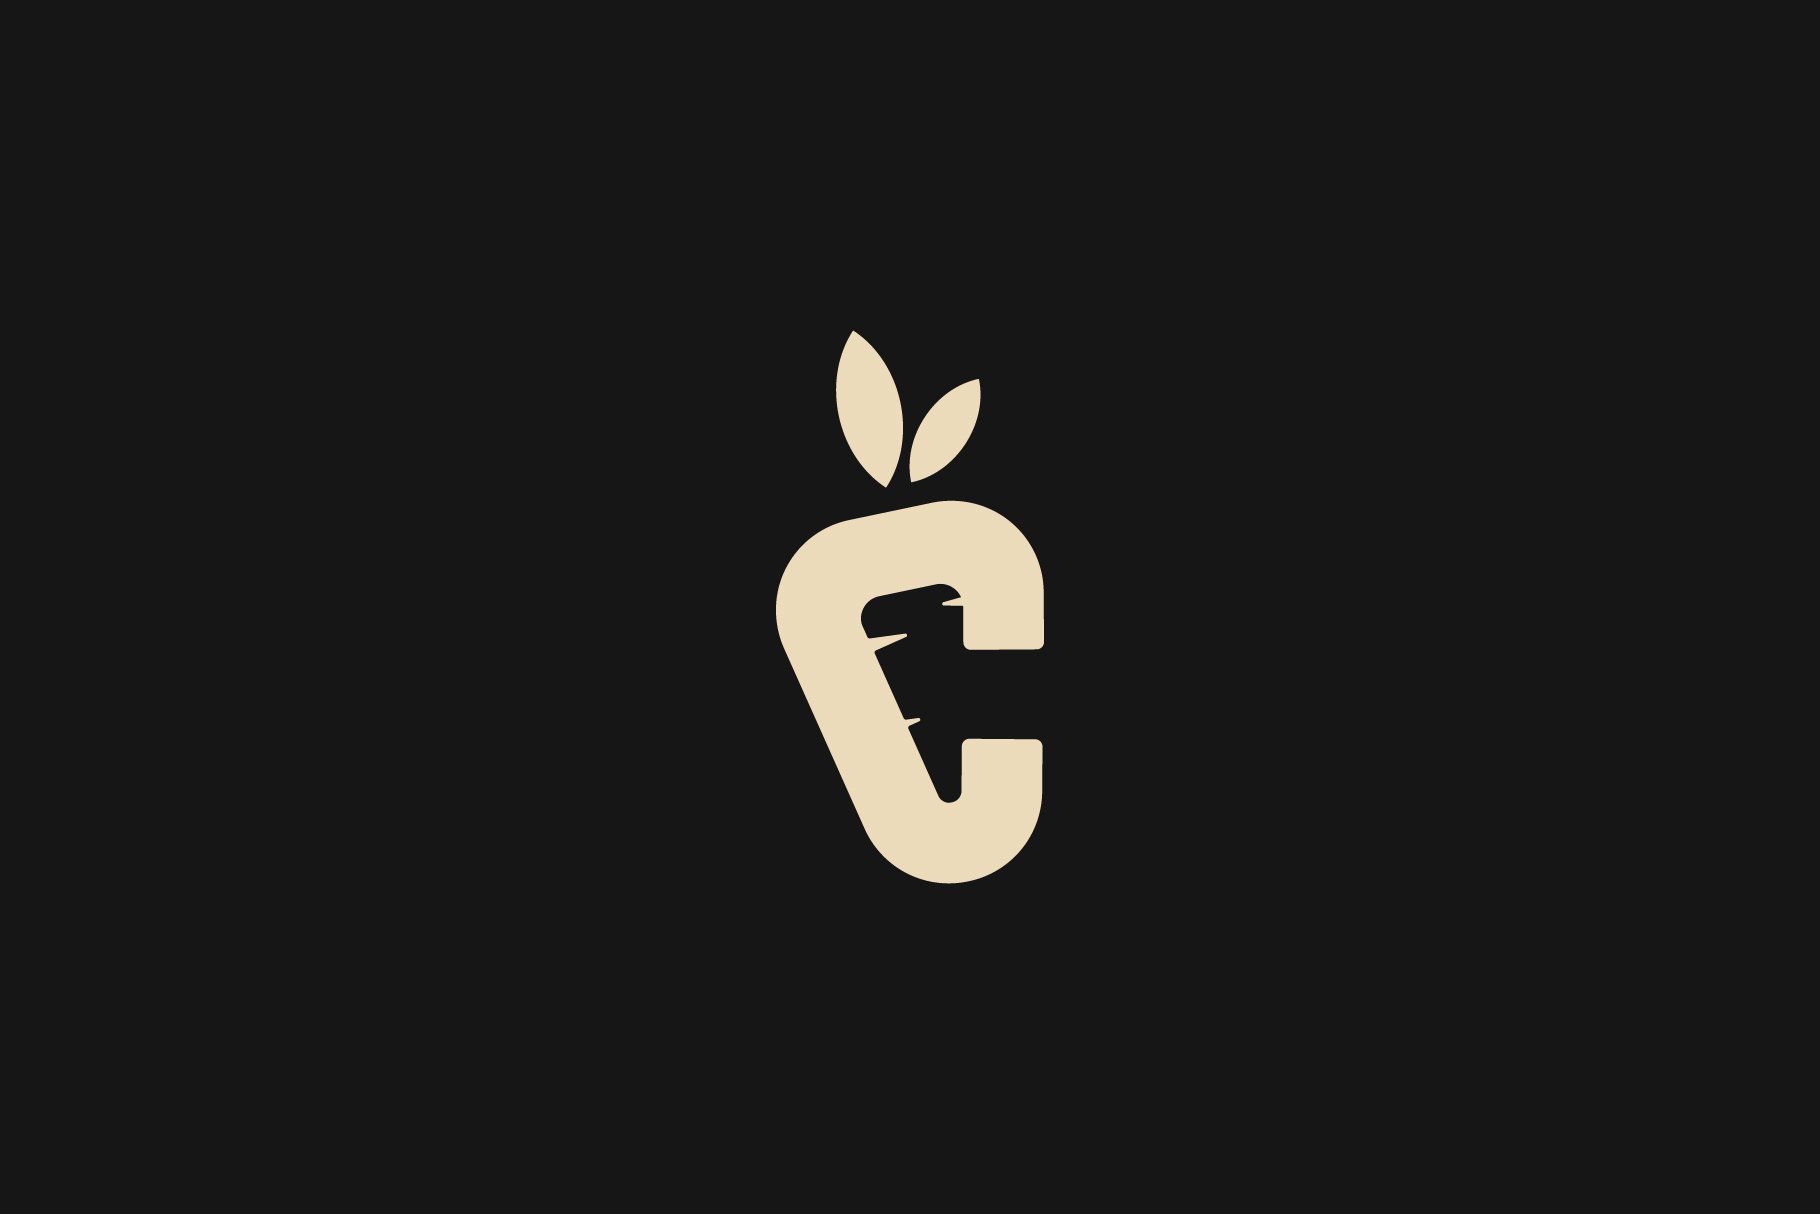 Letter C Carrot Logo Design Vector cover image.